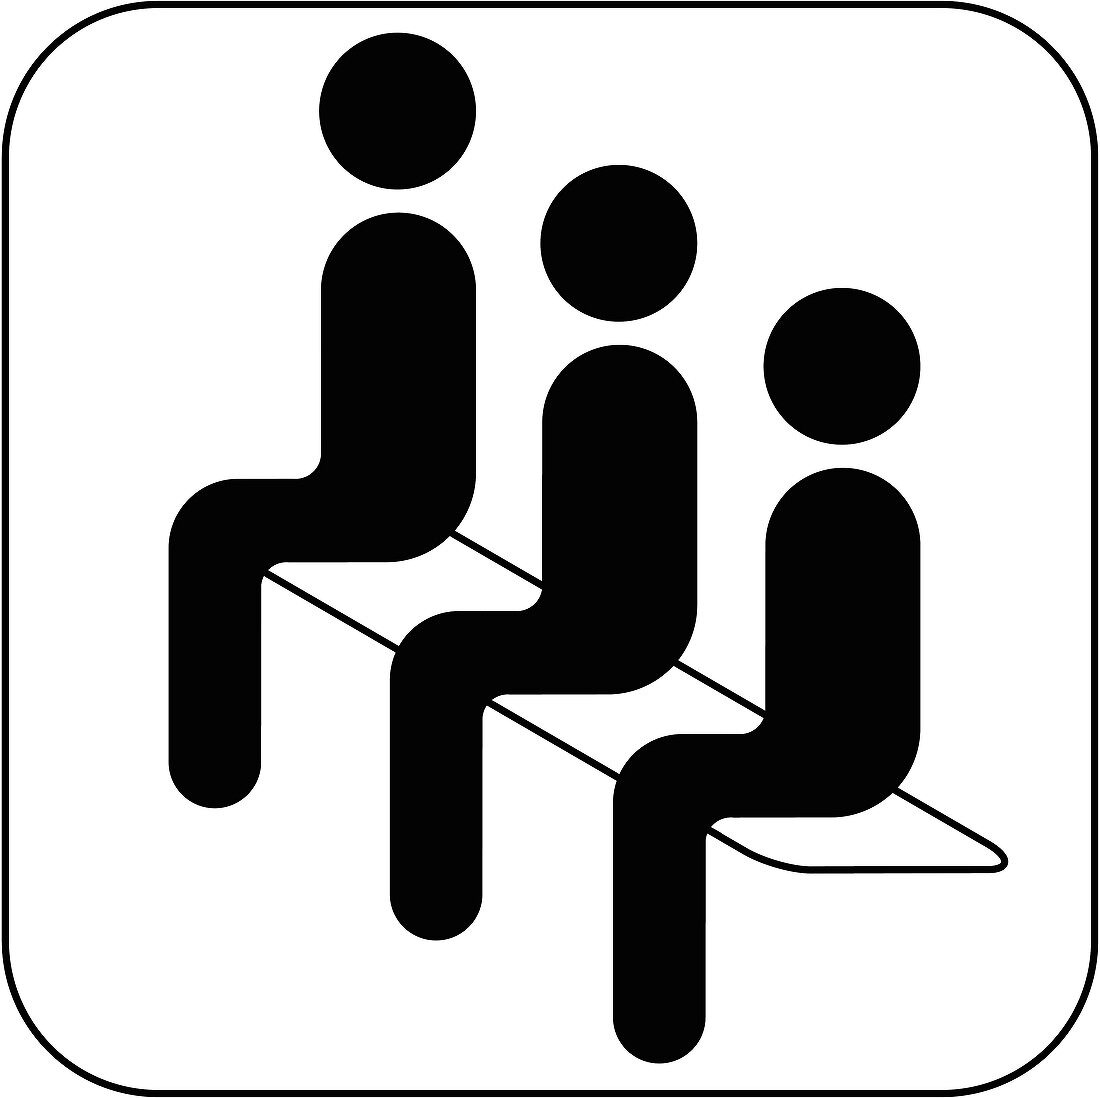 Waiting room symbol,artwork